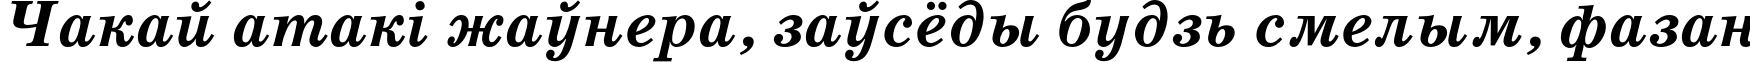 Пример написания шрифтом SchoolBookC Bold Italic текста на белорусском